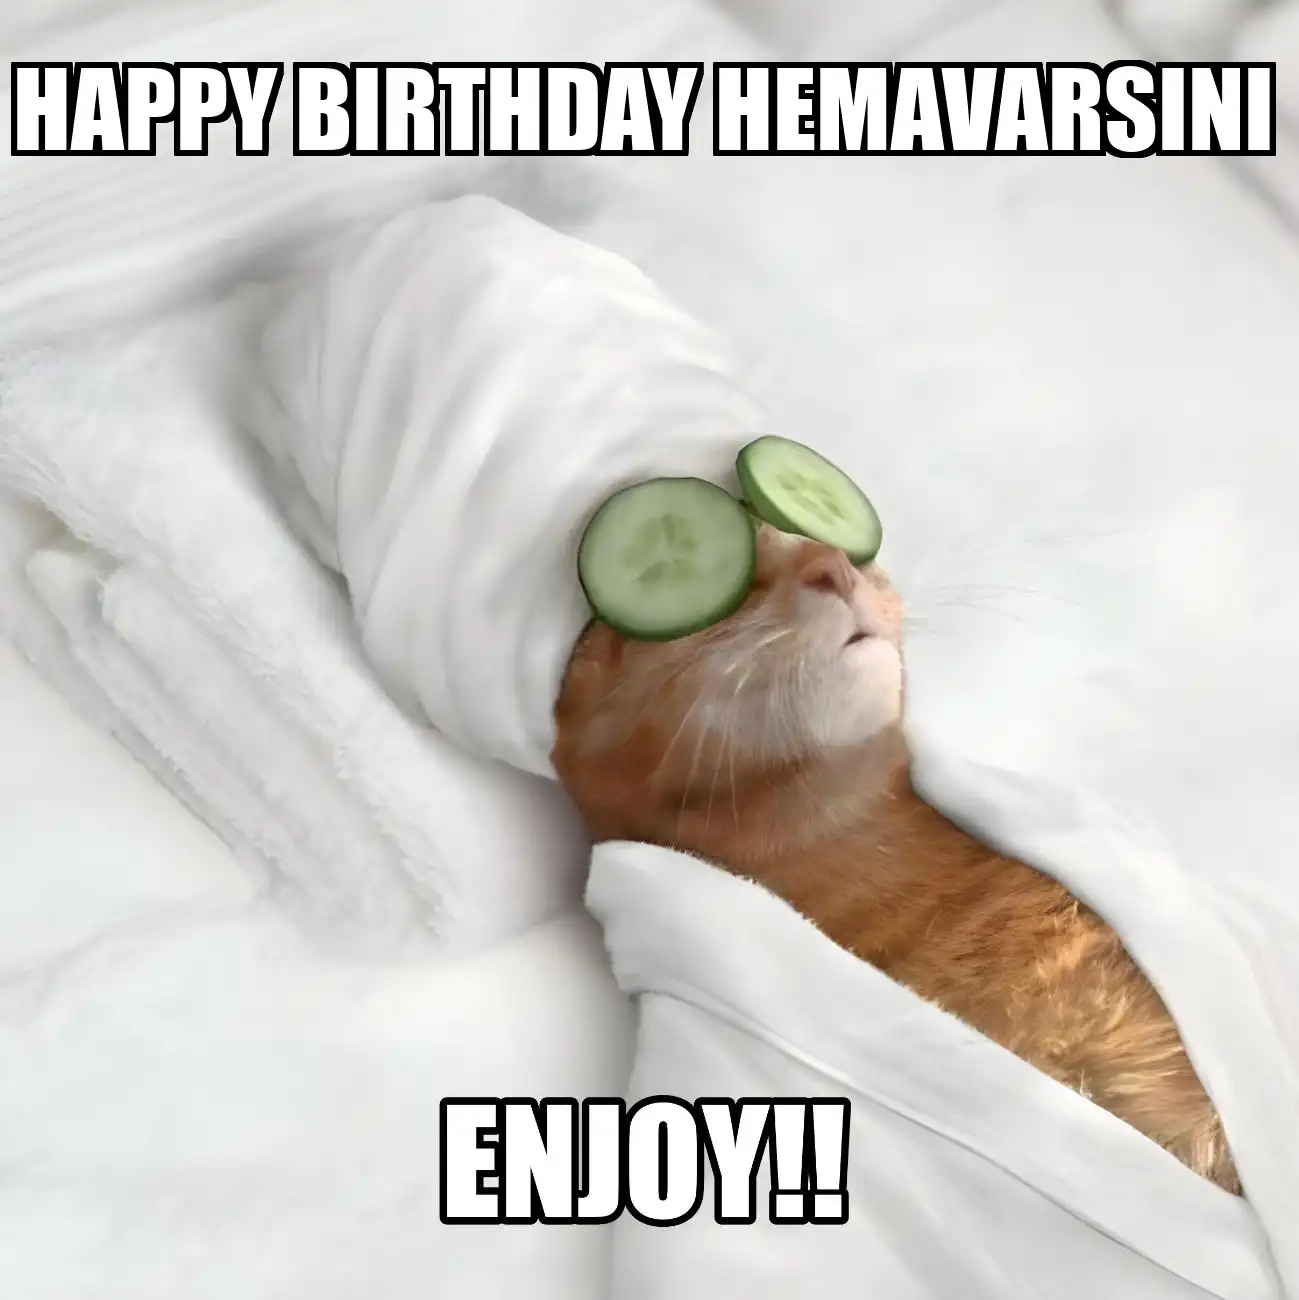 Happy Birthday Hemavarsini Enjoy Cat Meme